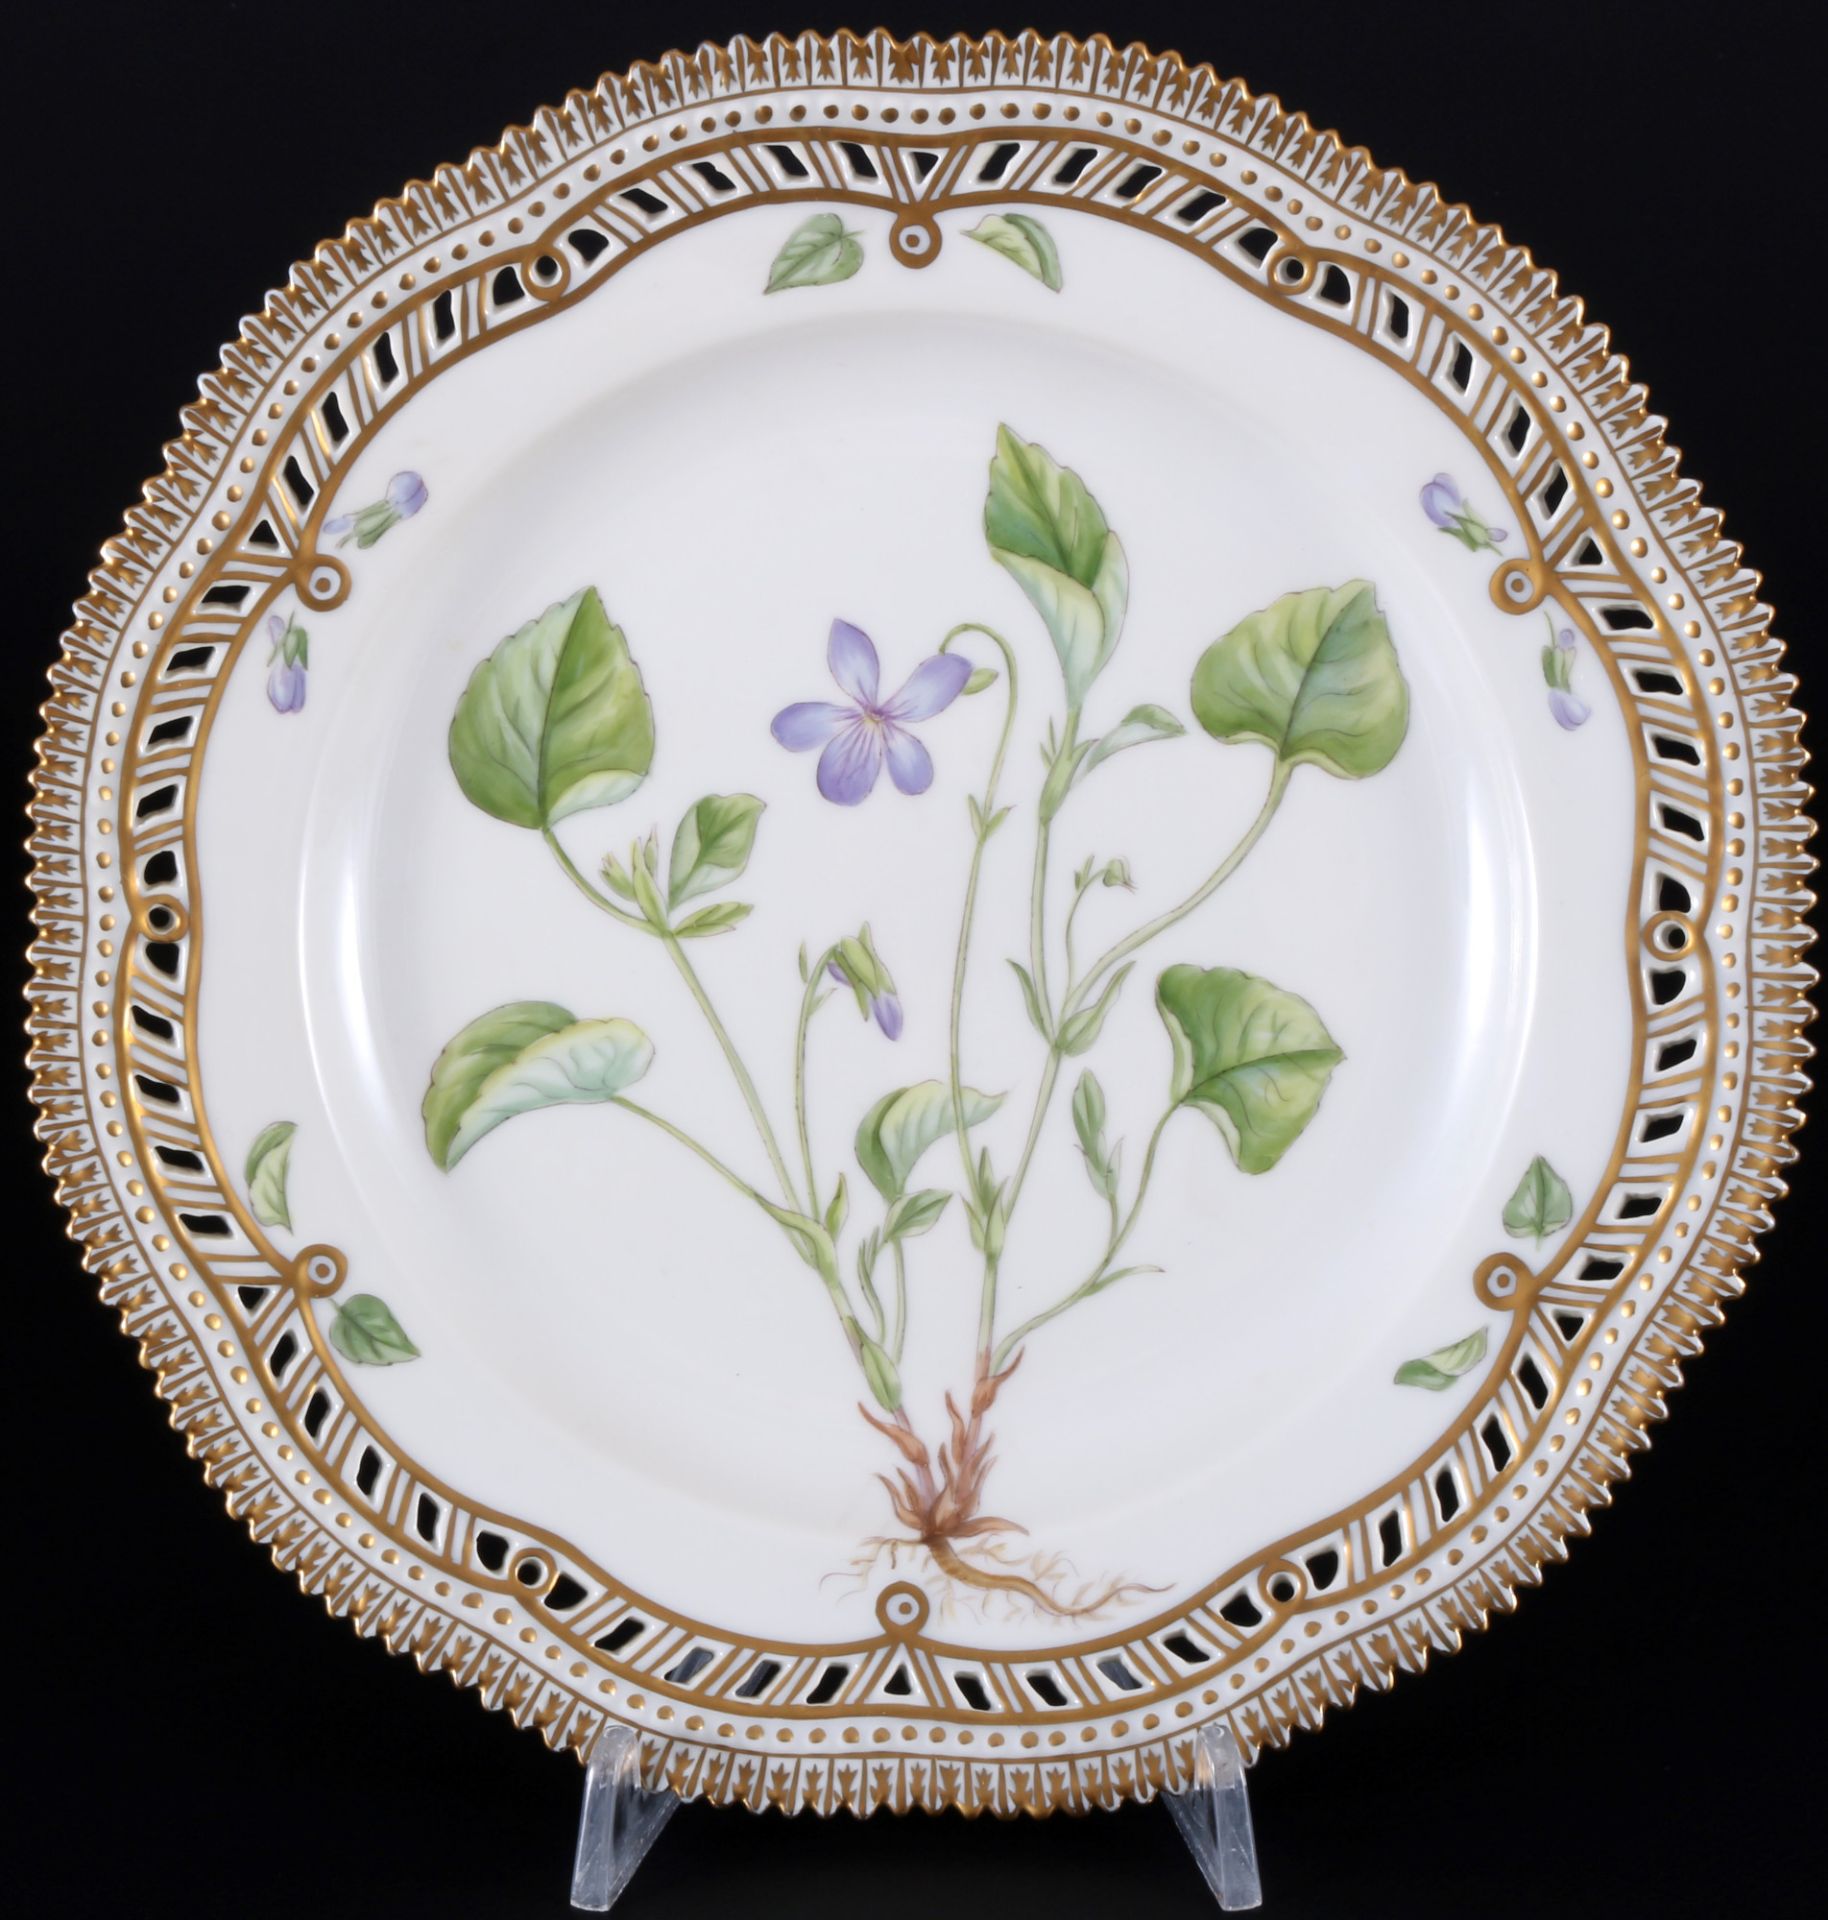 Royal Copenhagen Flora Danica Teller 3554, cutwork plate 1st choice,